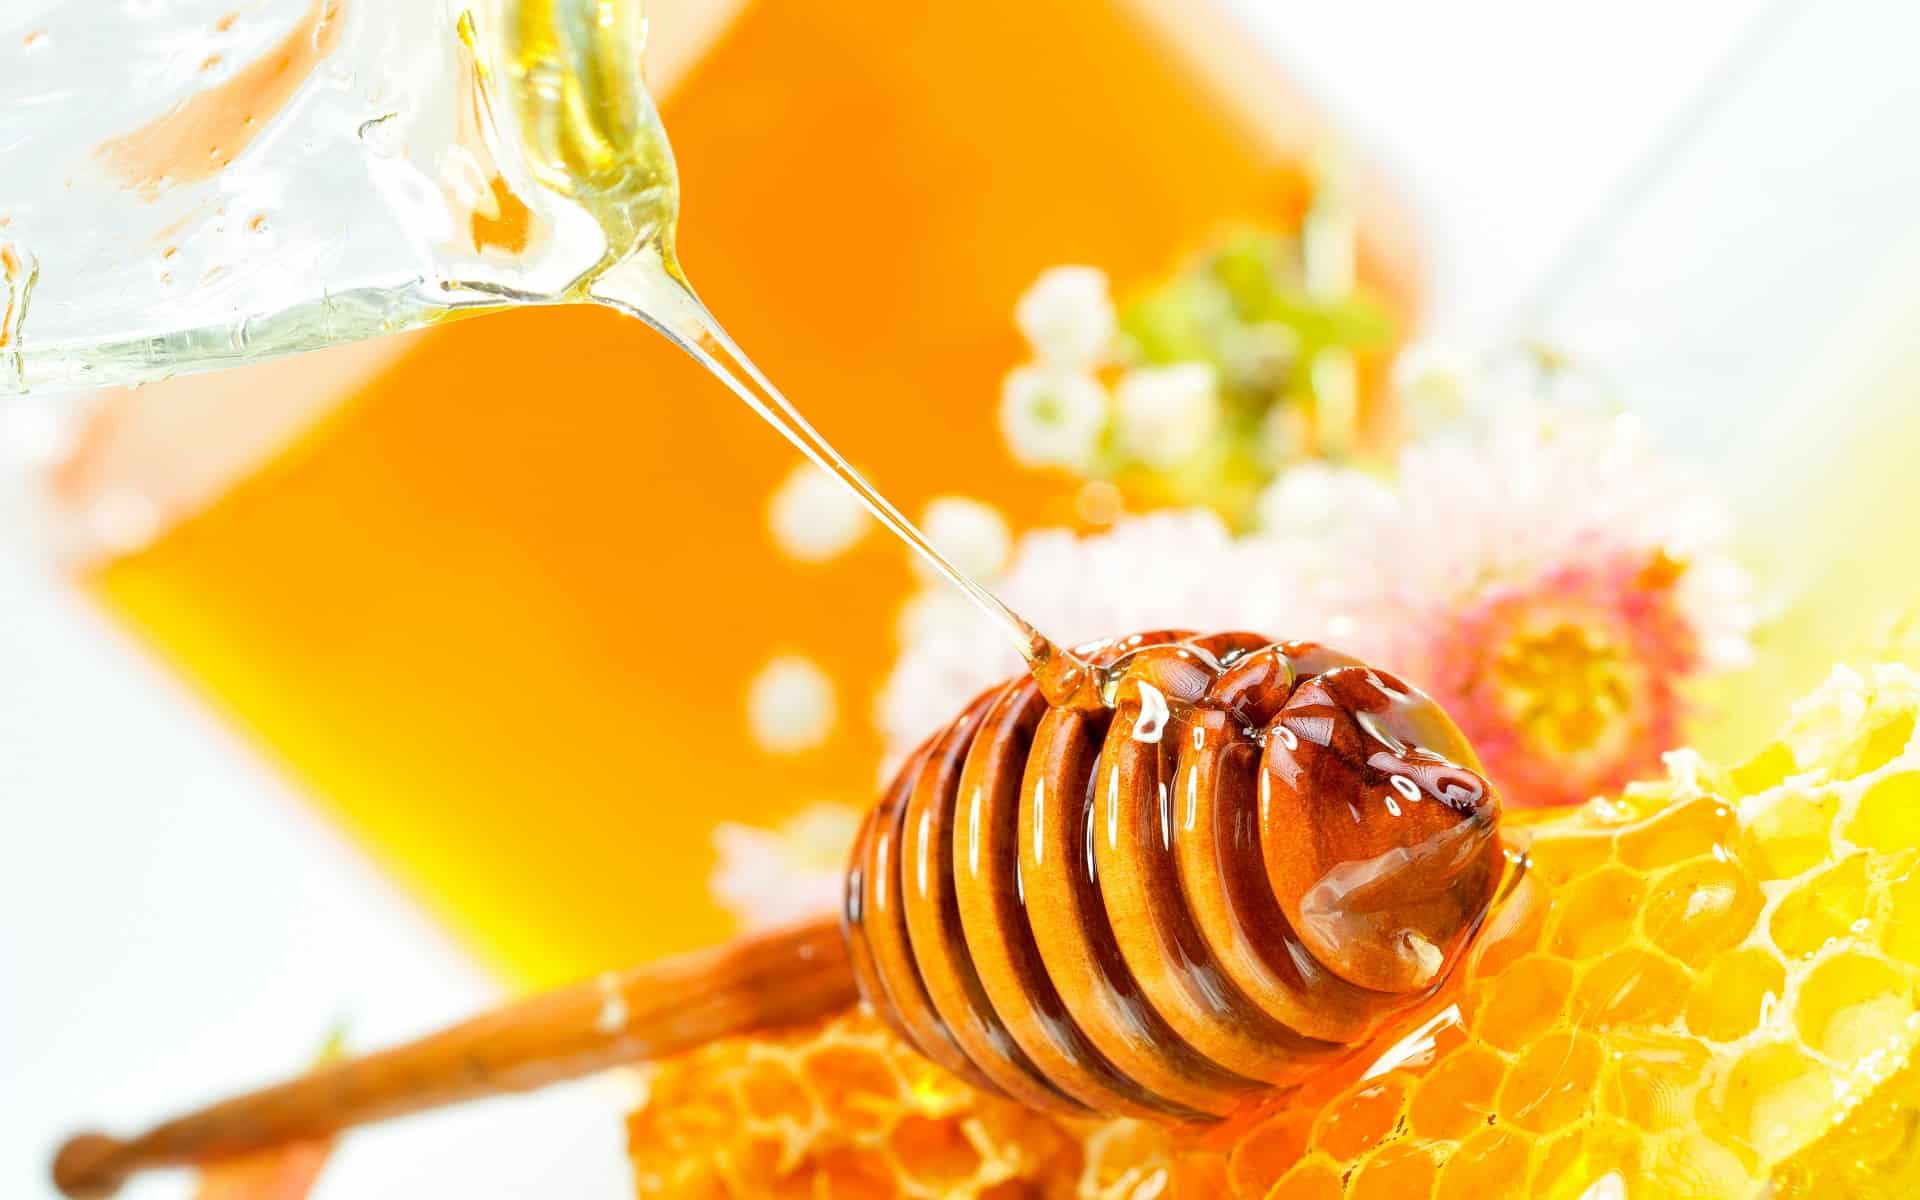   طرق استخدام ماسكات العسل في روتين جمالك